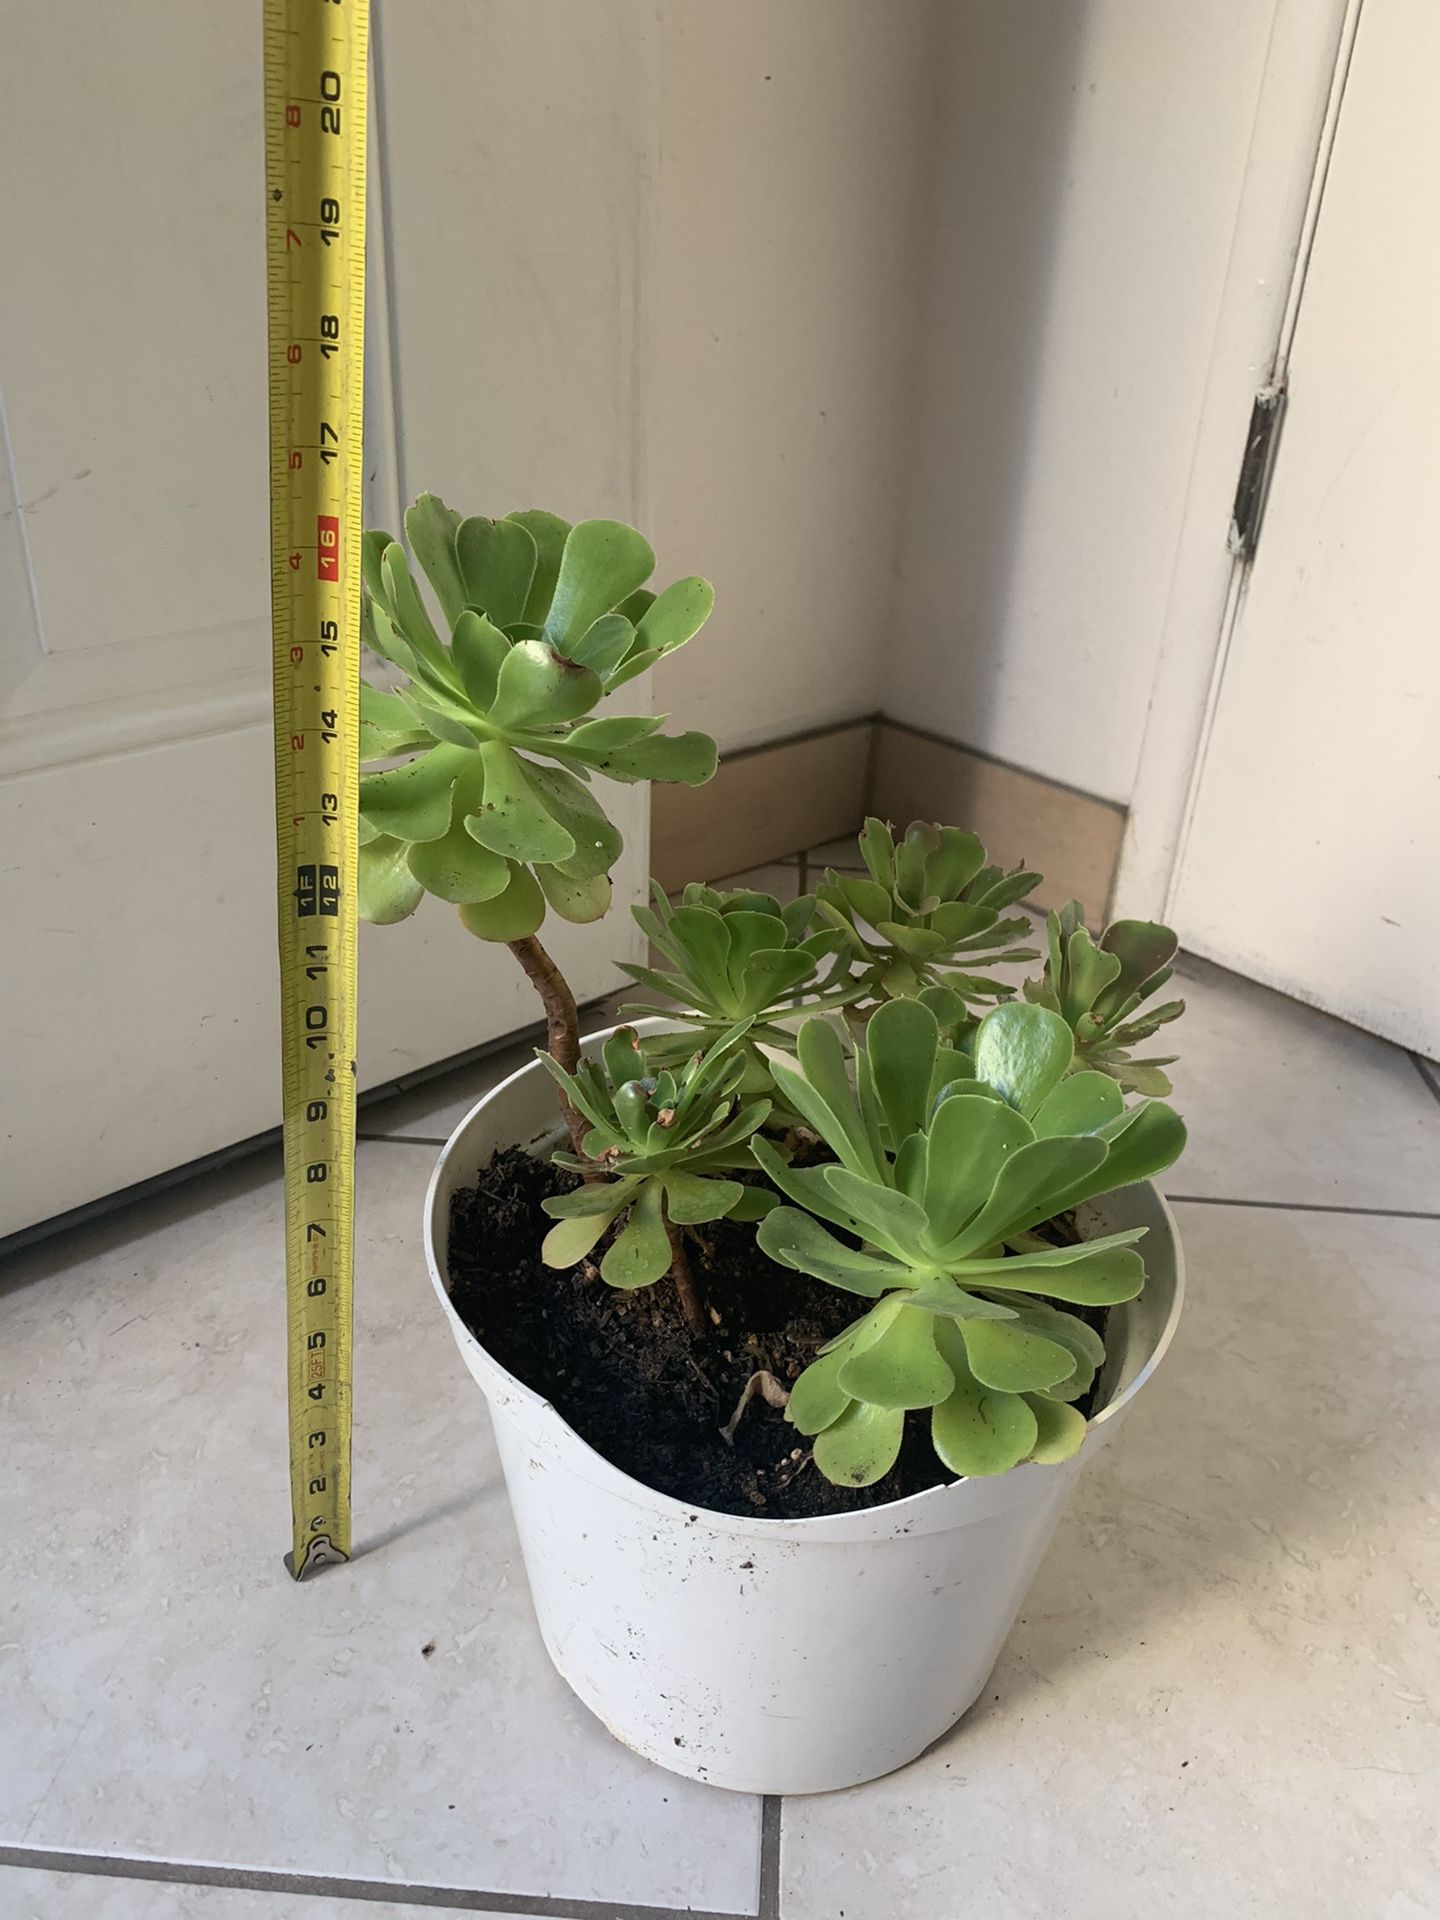 Aeonium plant succulent